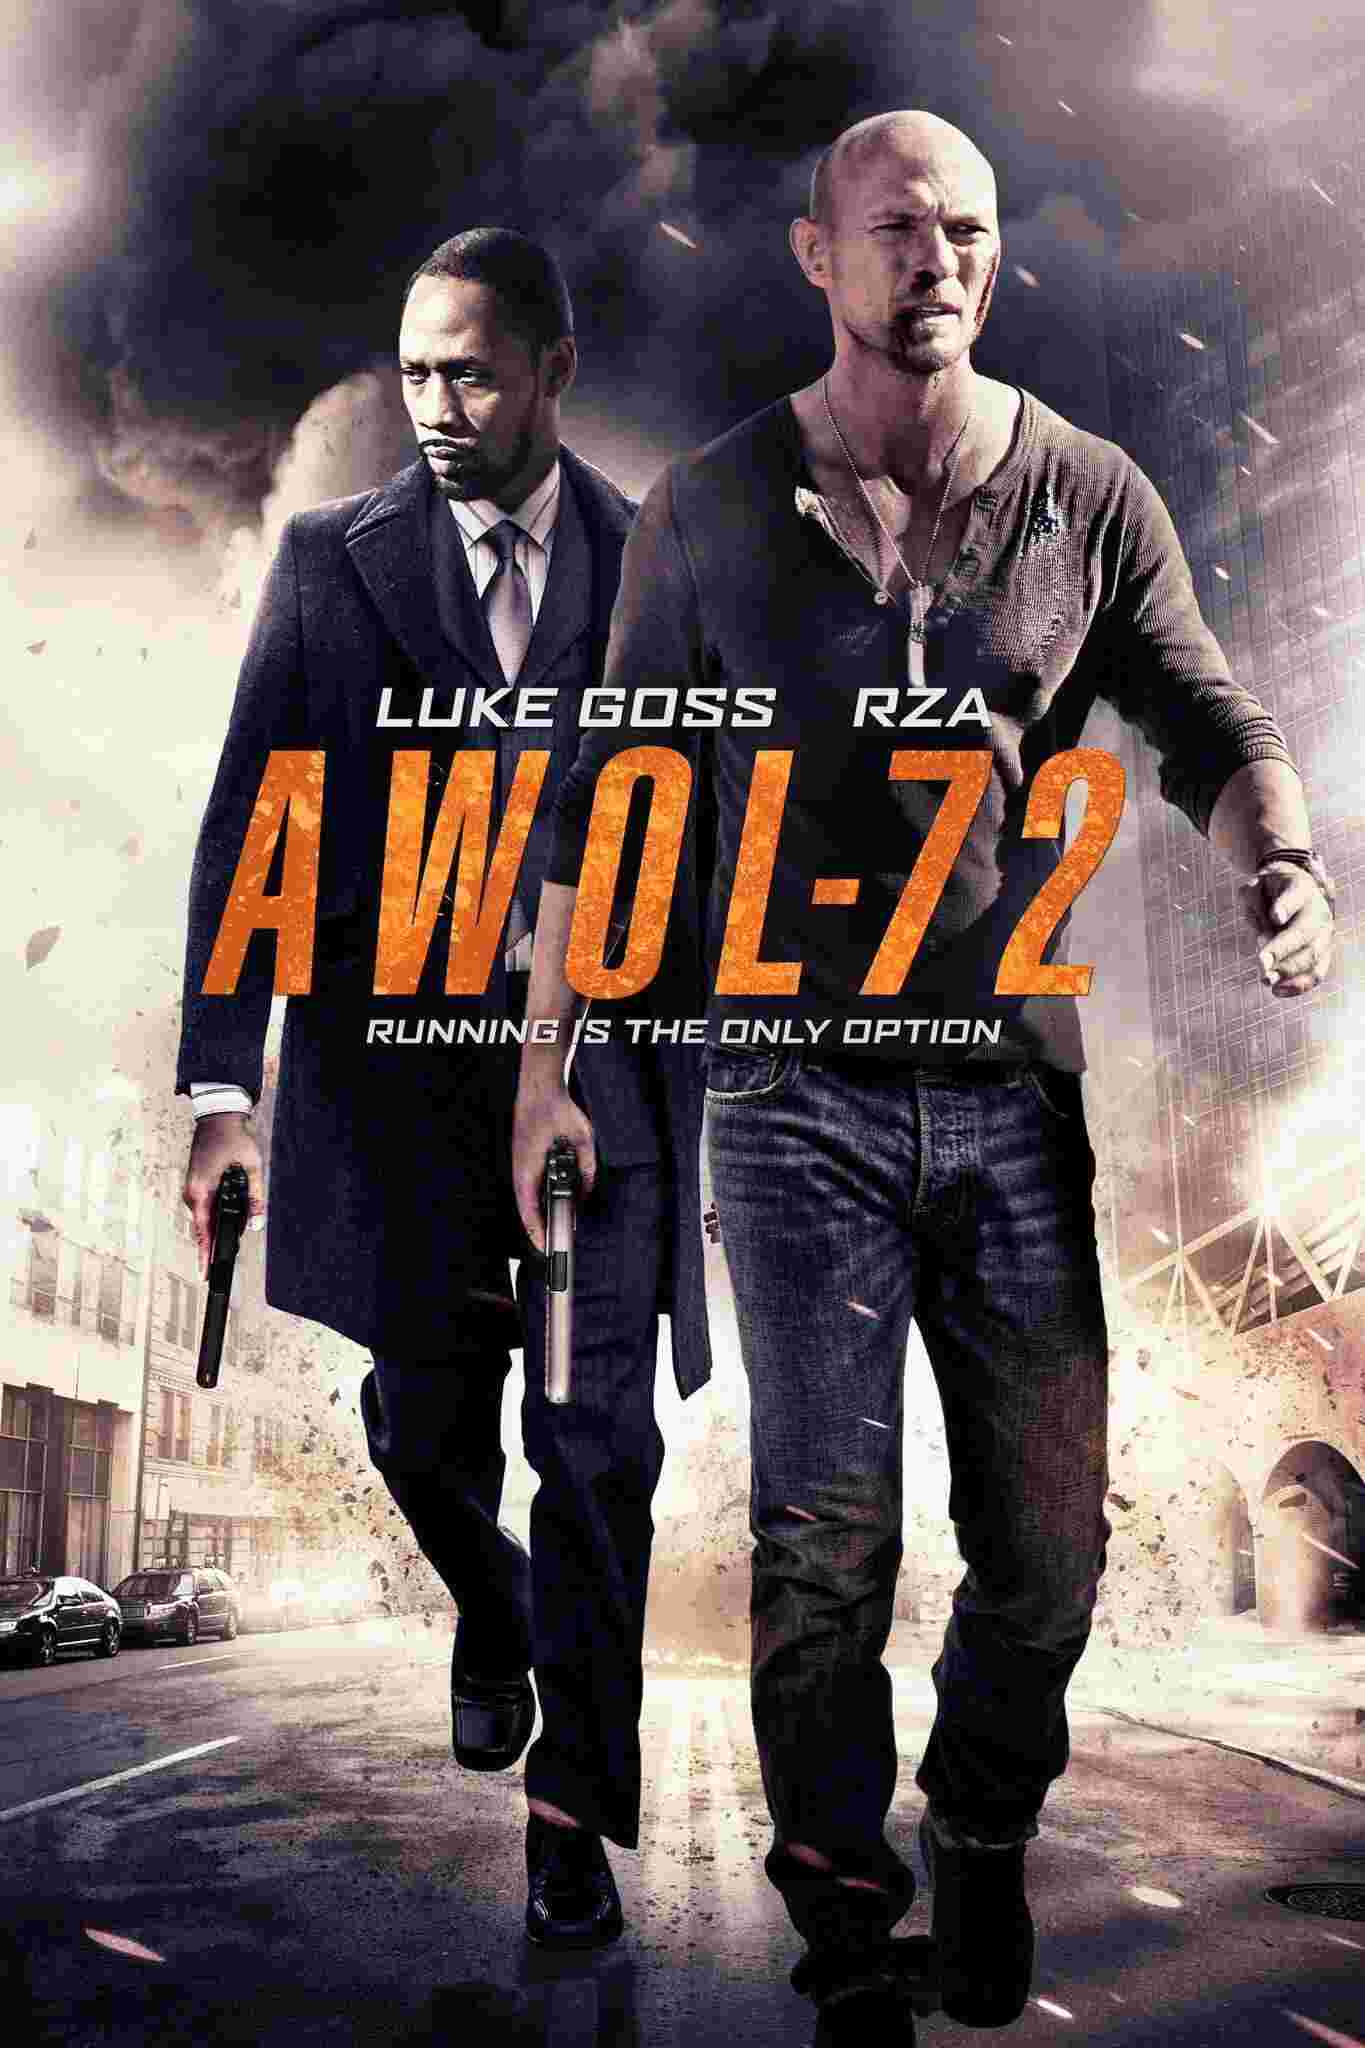 AWOL-72 (2015) Luke Goss